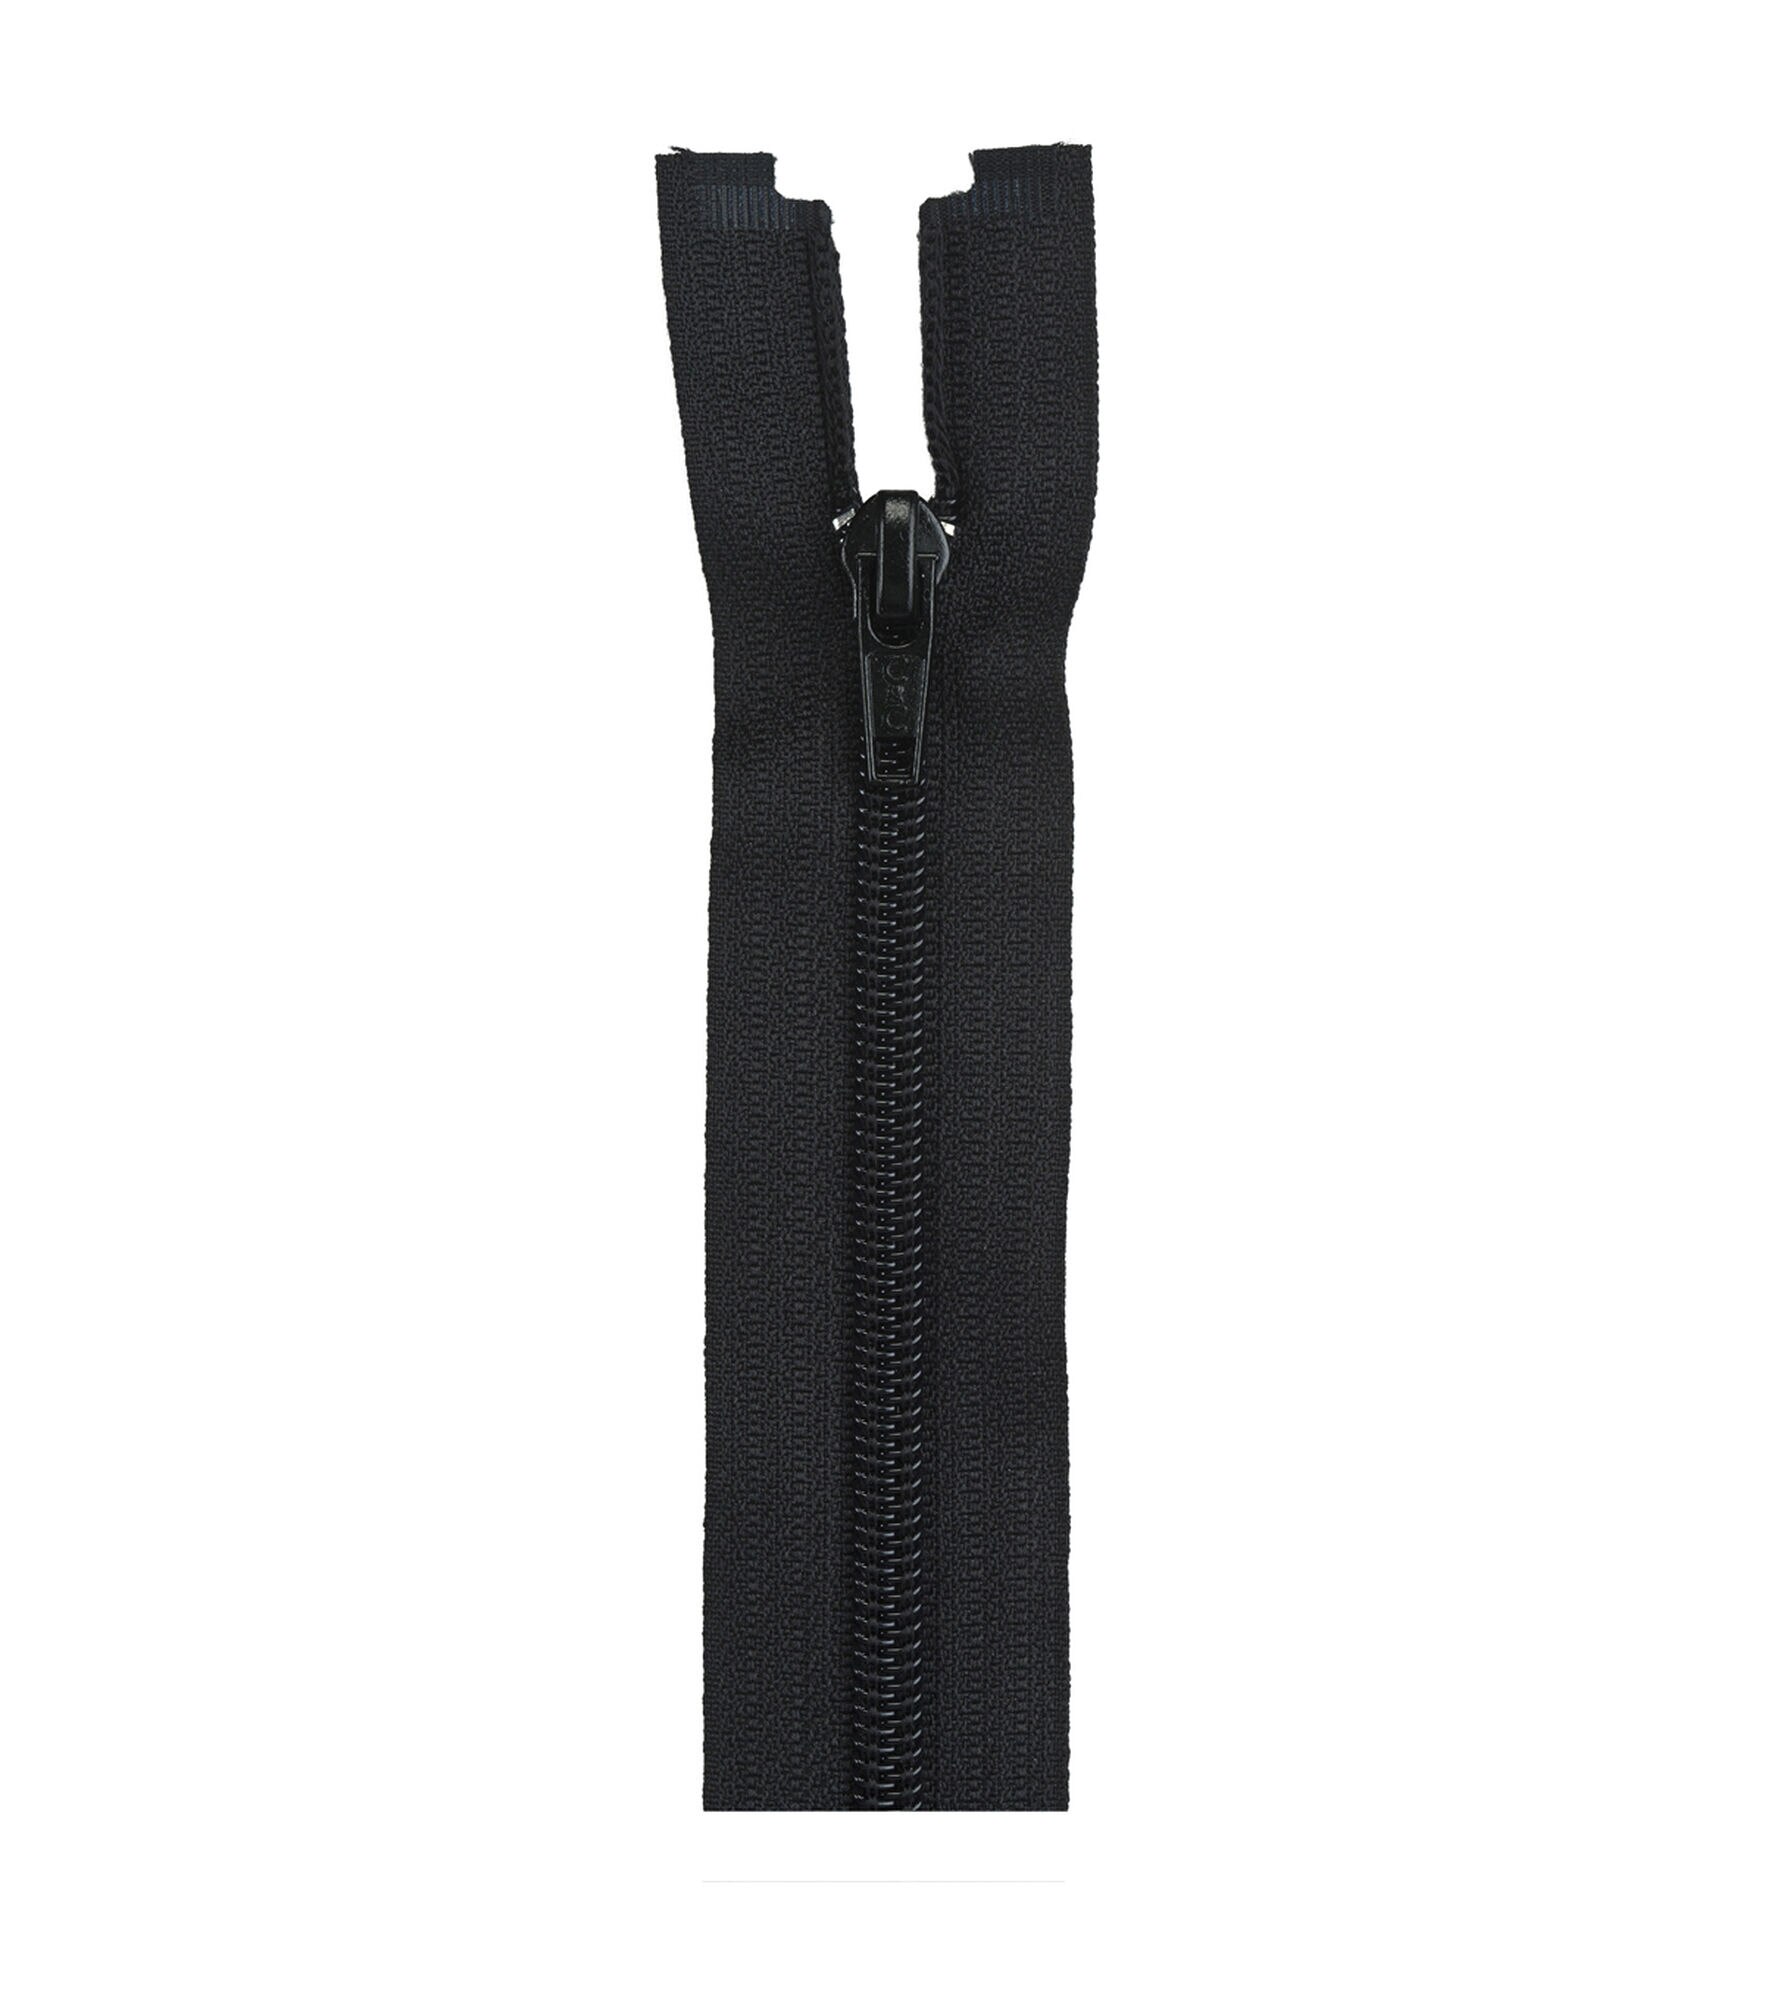 Coats & Clark Coil Separating Zipper 18", Black, hi-res